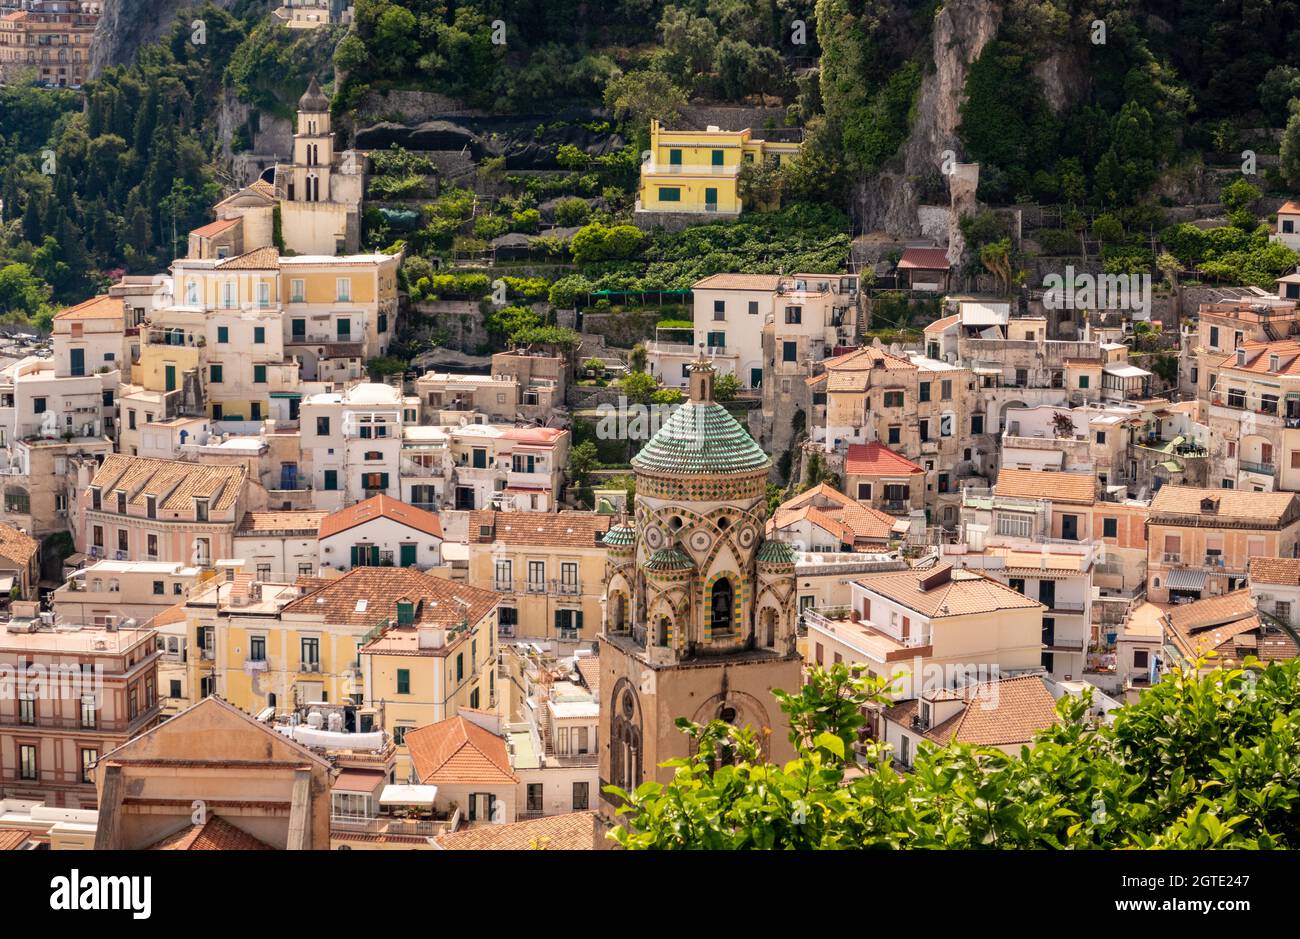 La ciudad de Amalfi en la costa de Amalfi, Salerno, Campania, Italia Foto de stock